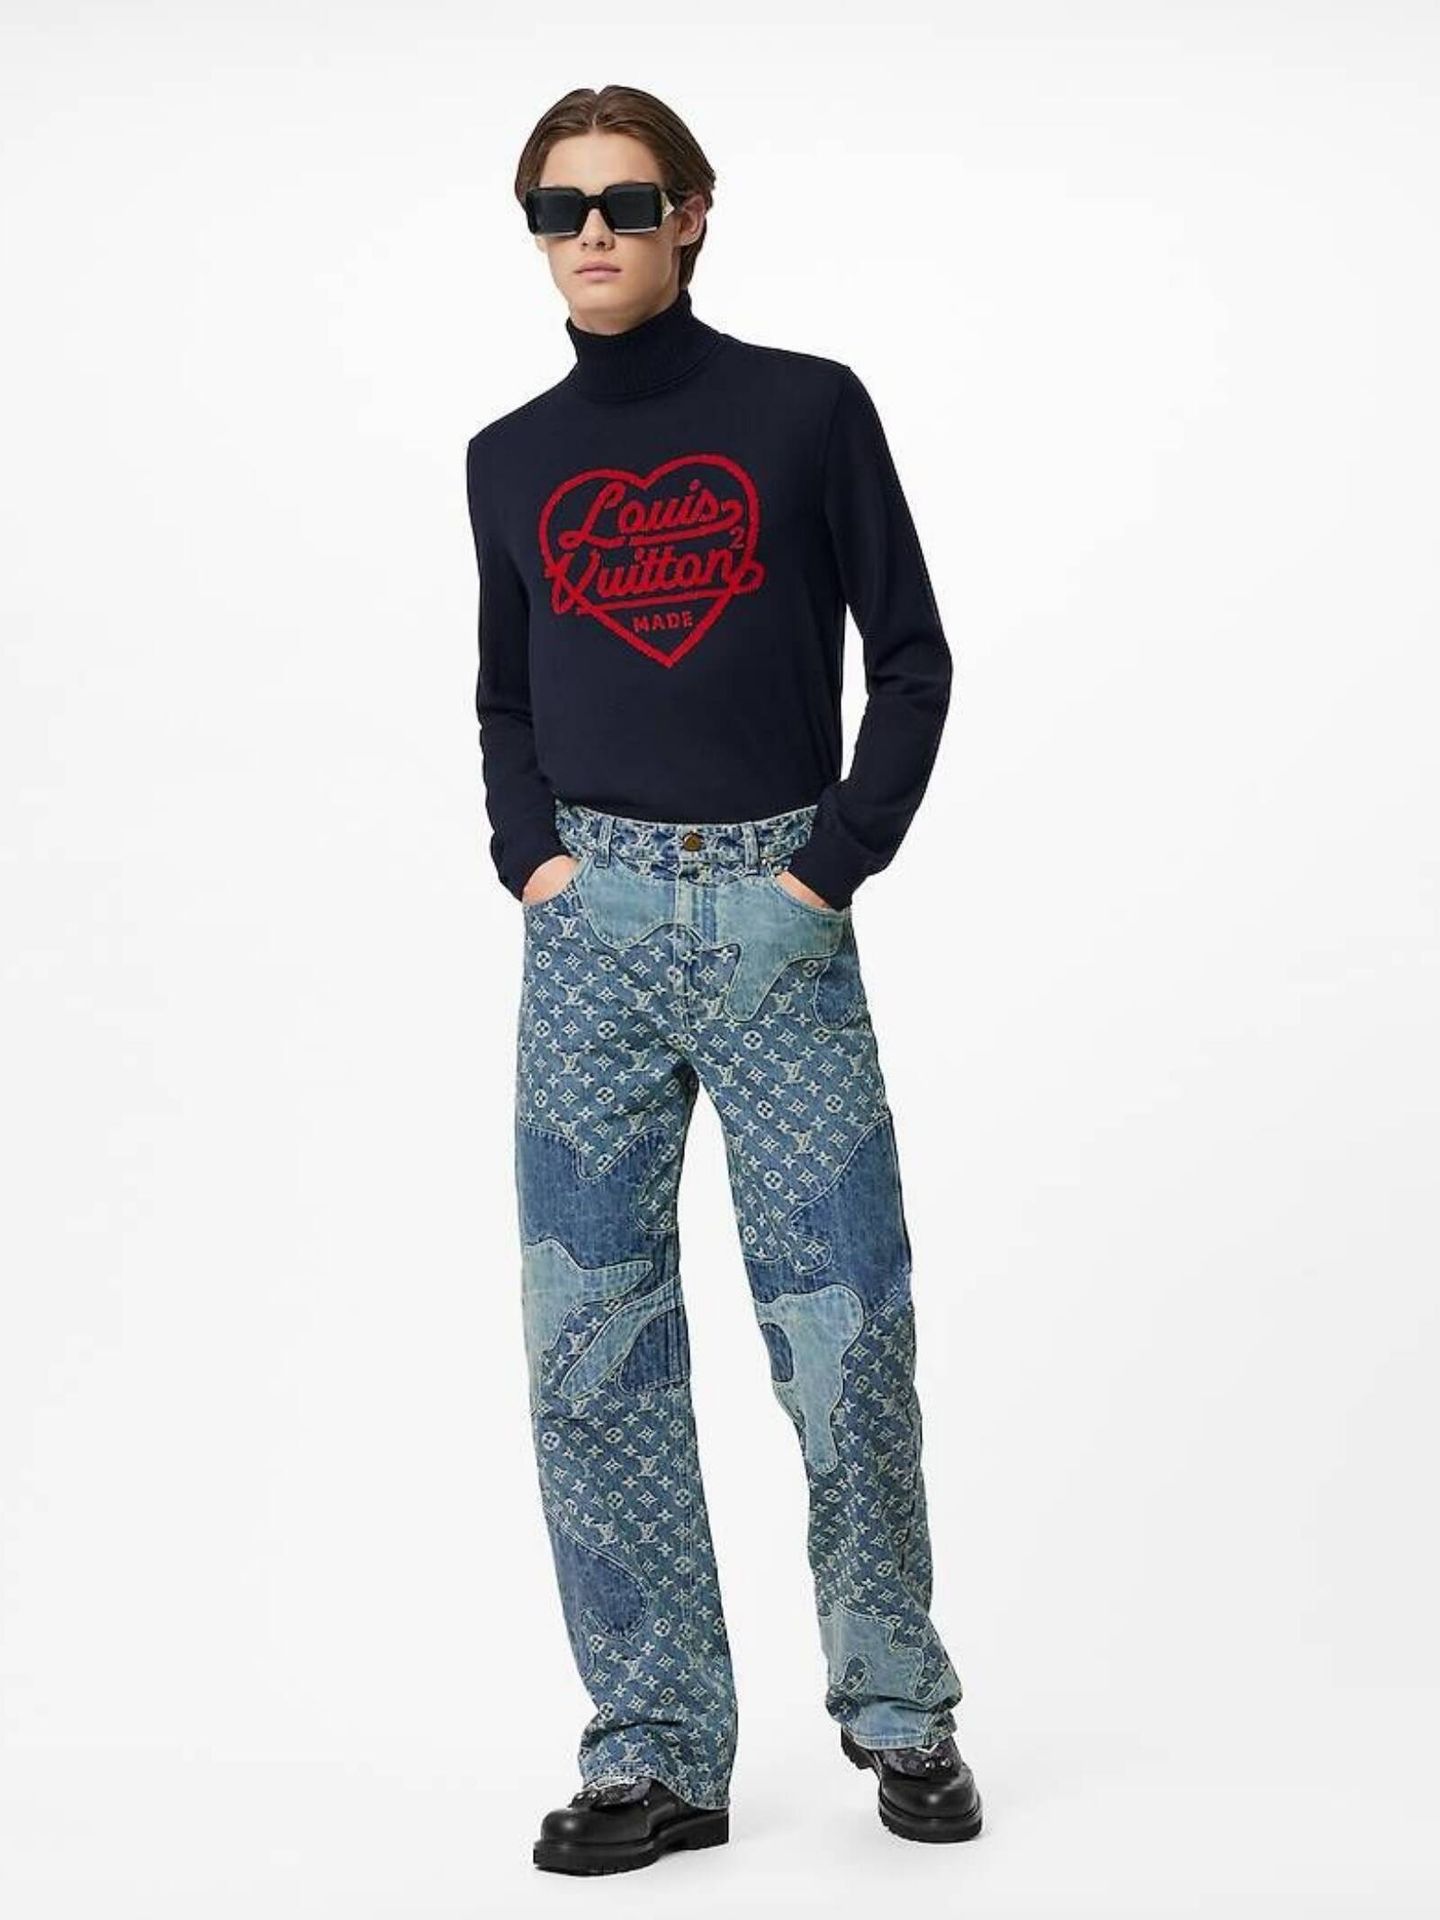 El pantalón de Louis Vuitton que tiene Victoria Federica. (Cortesía)